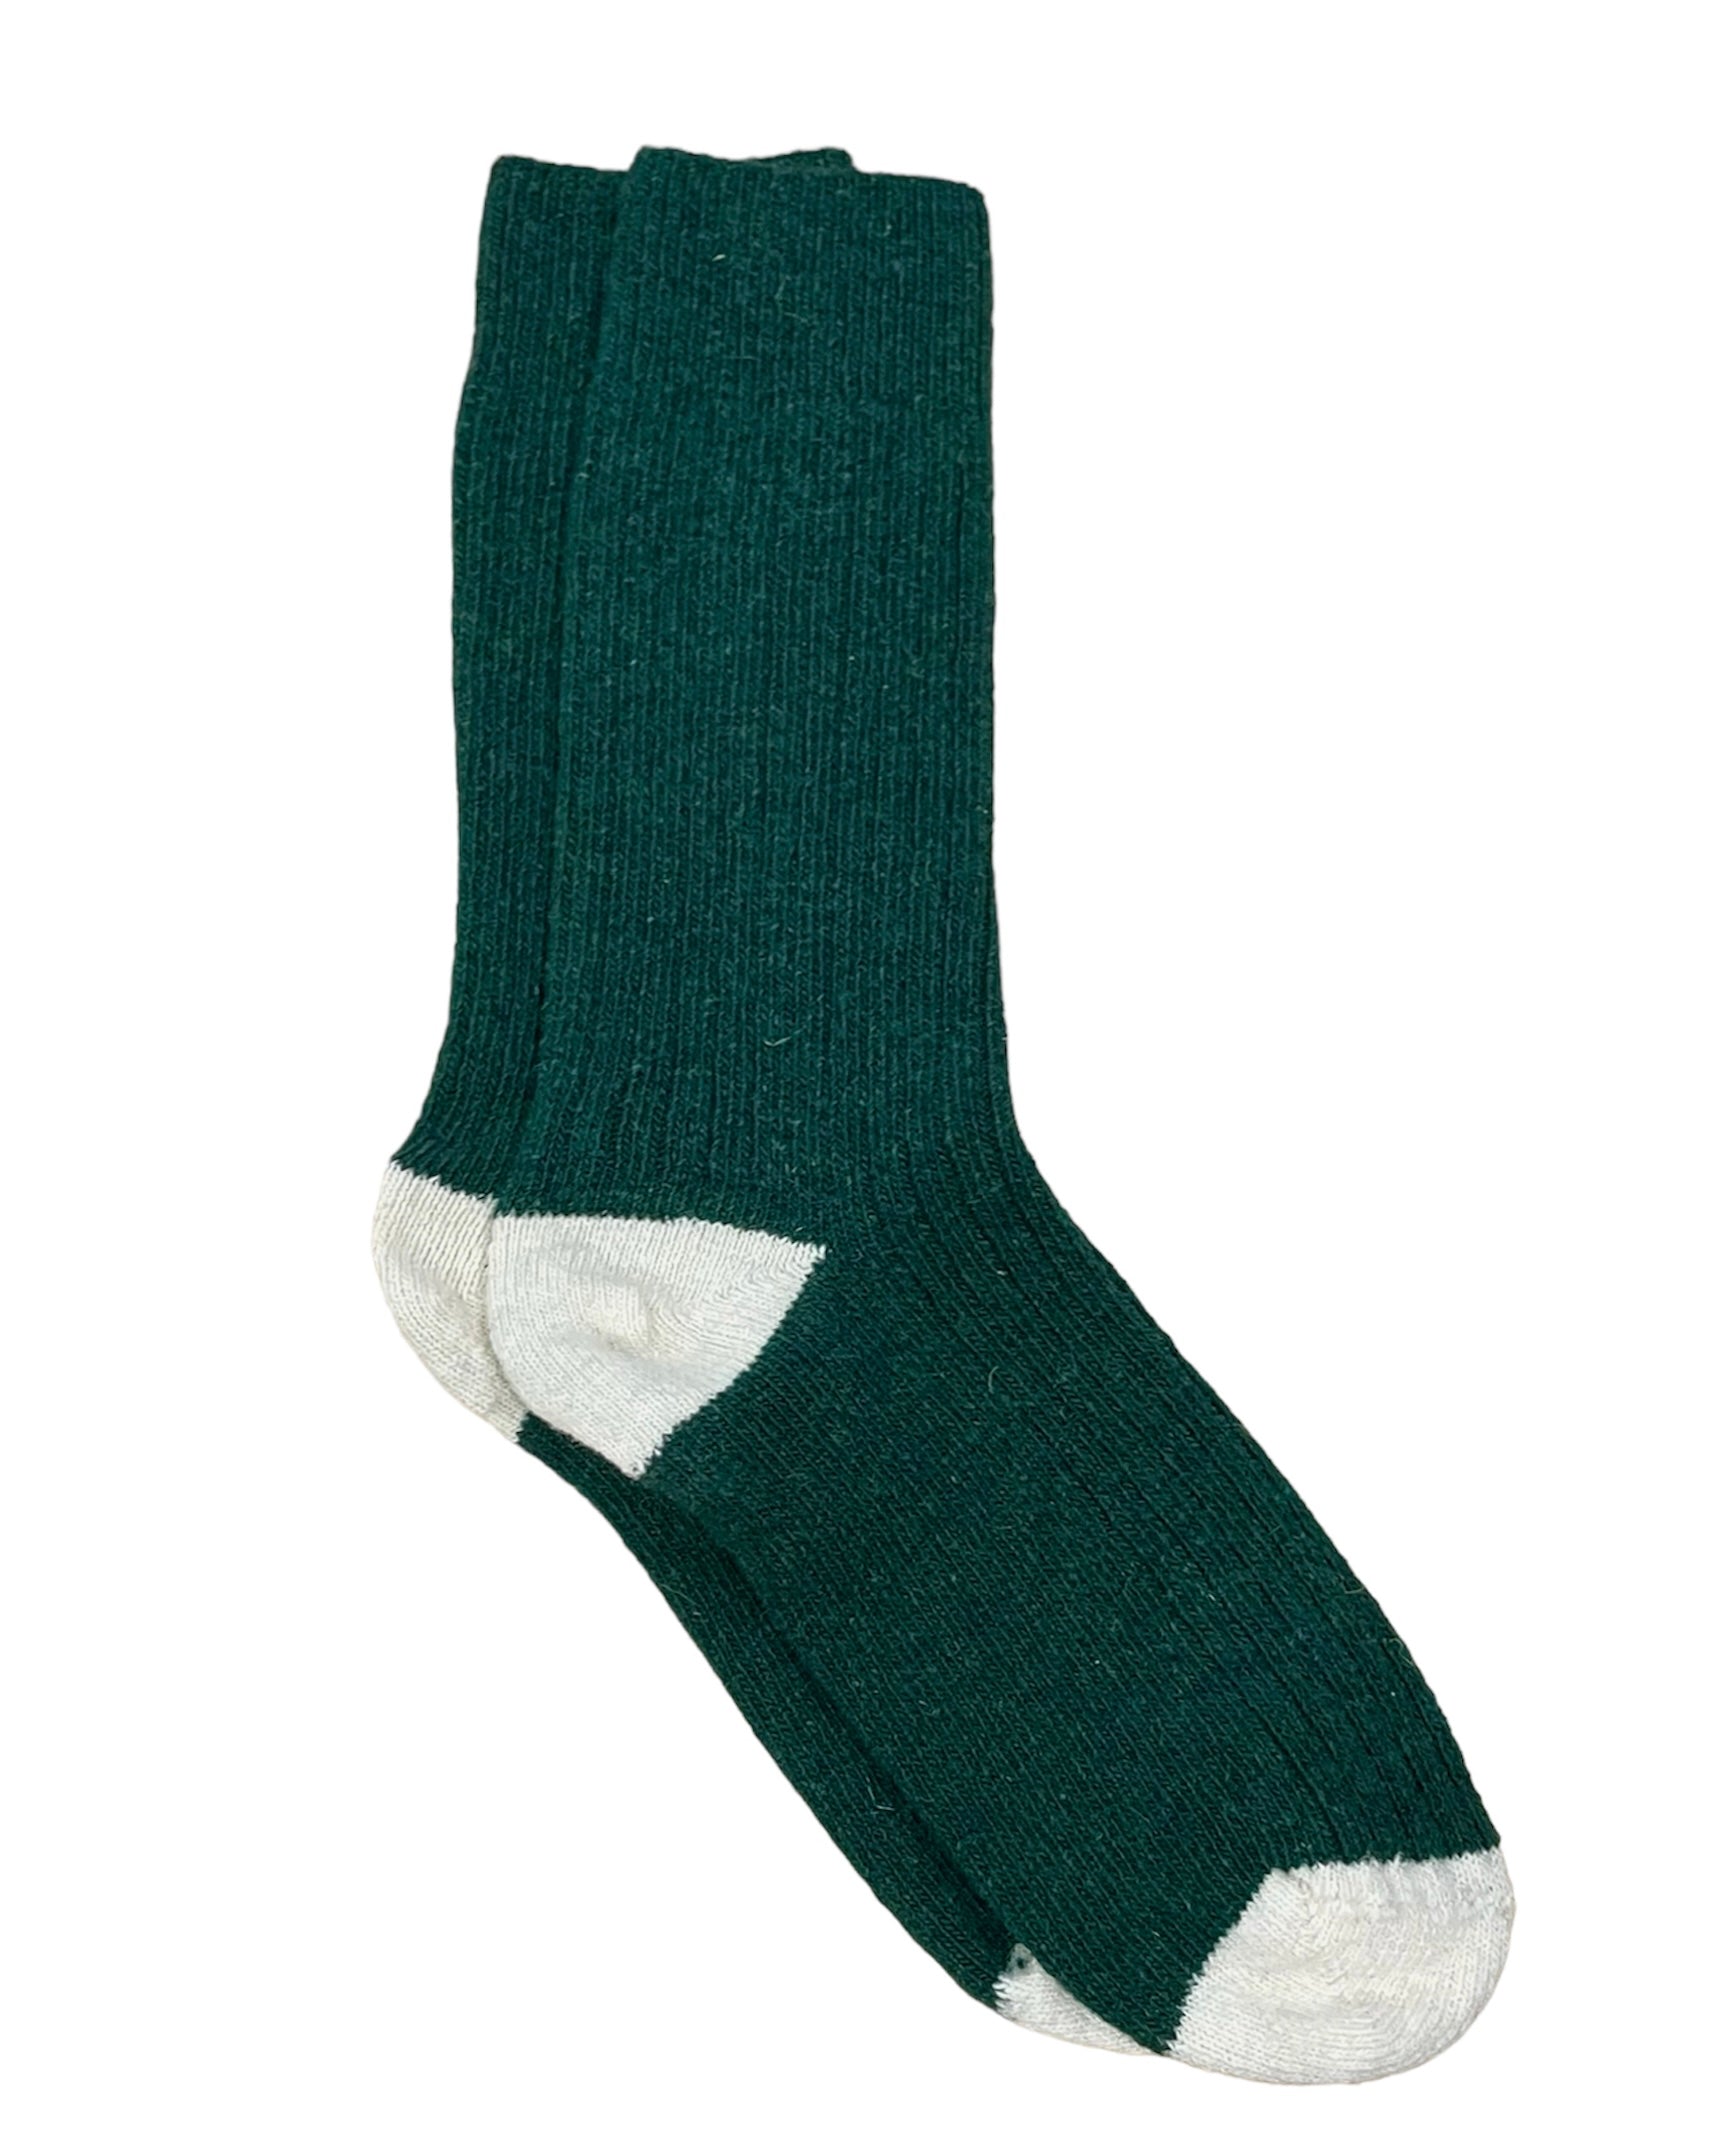 chaussettes en laine éthiques et responsables, vert sapin et blanc écru, laine des Pyrénées et coton recyclé, made in France, maison izard